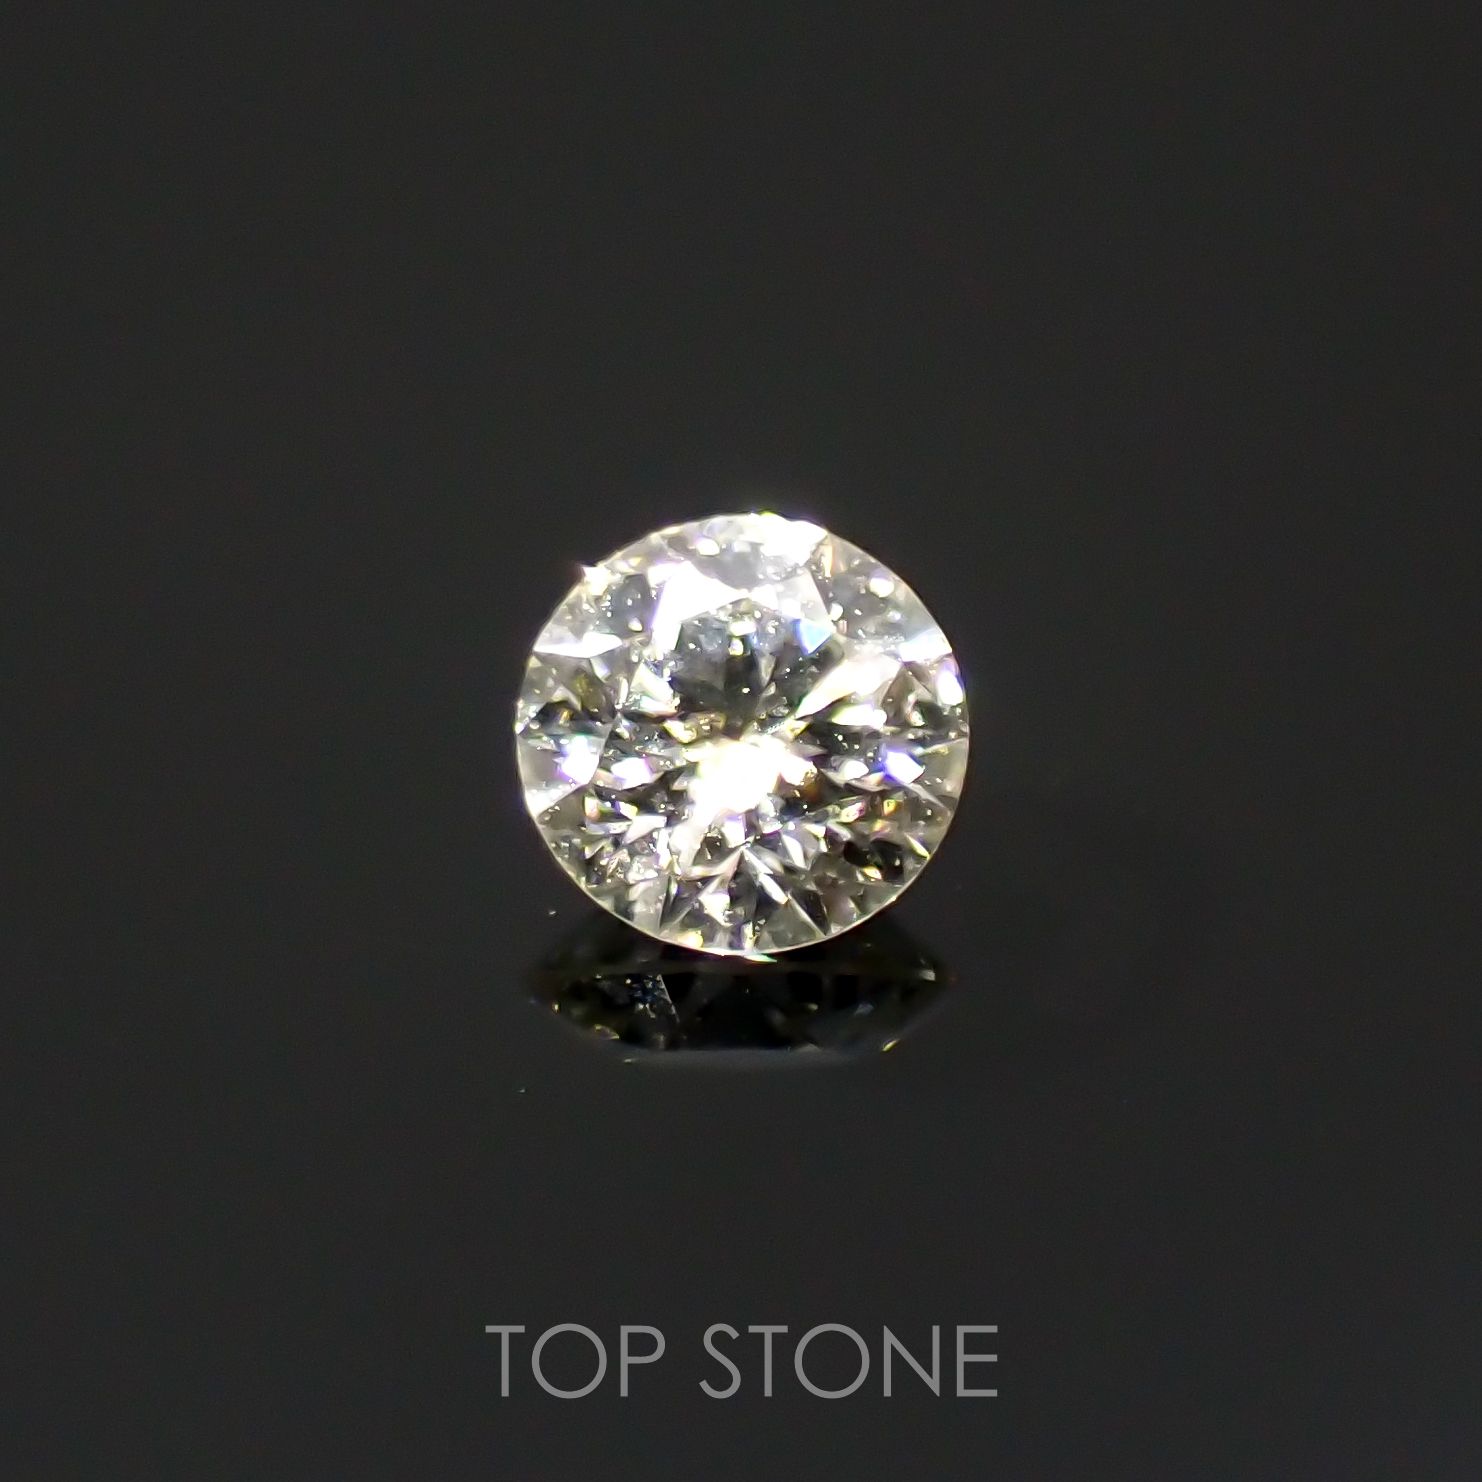 宝石名から探す / ダイヤモンド 通販 | TOP STONE(トップストーン)